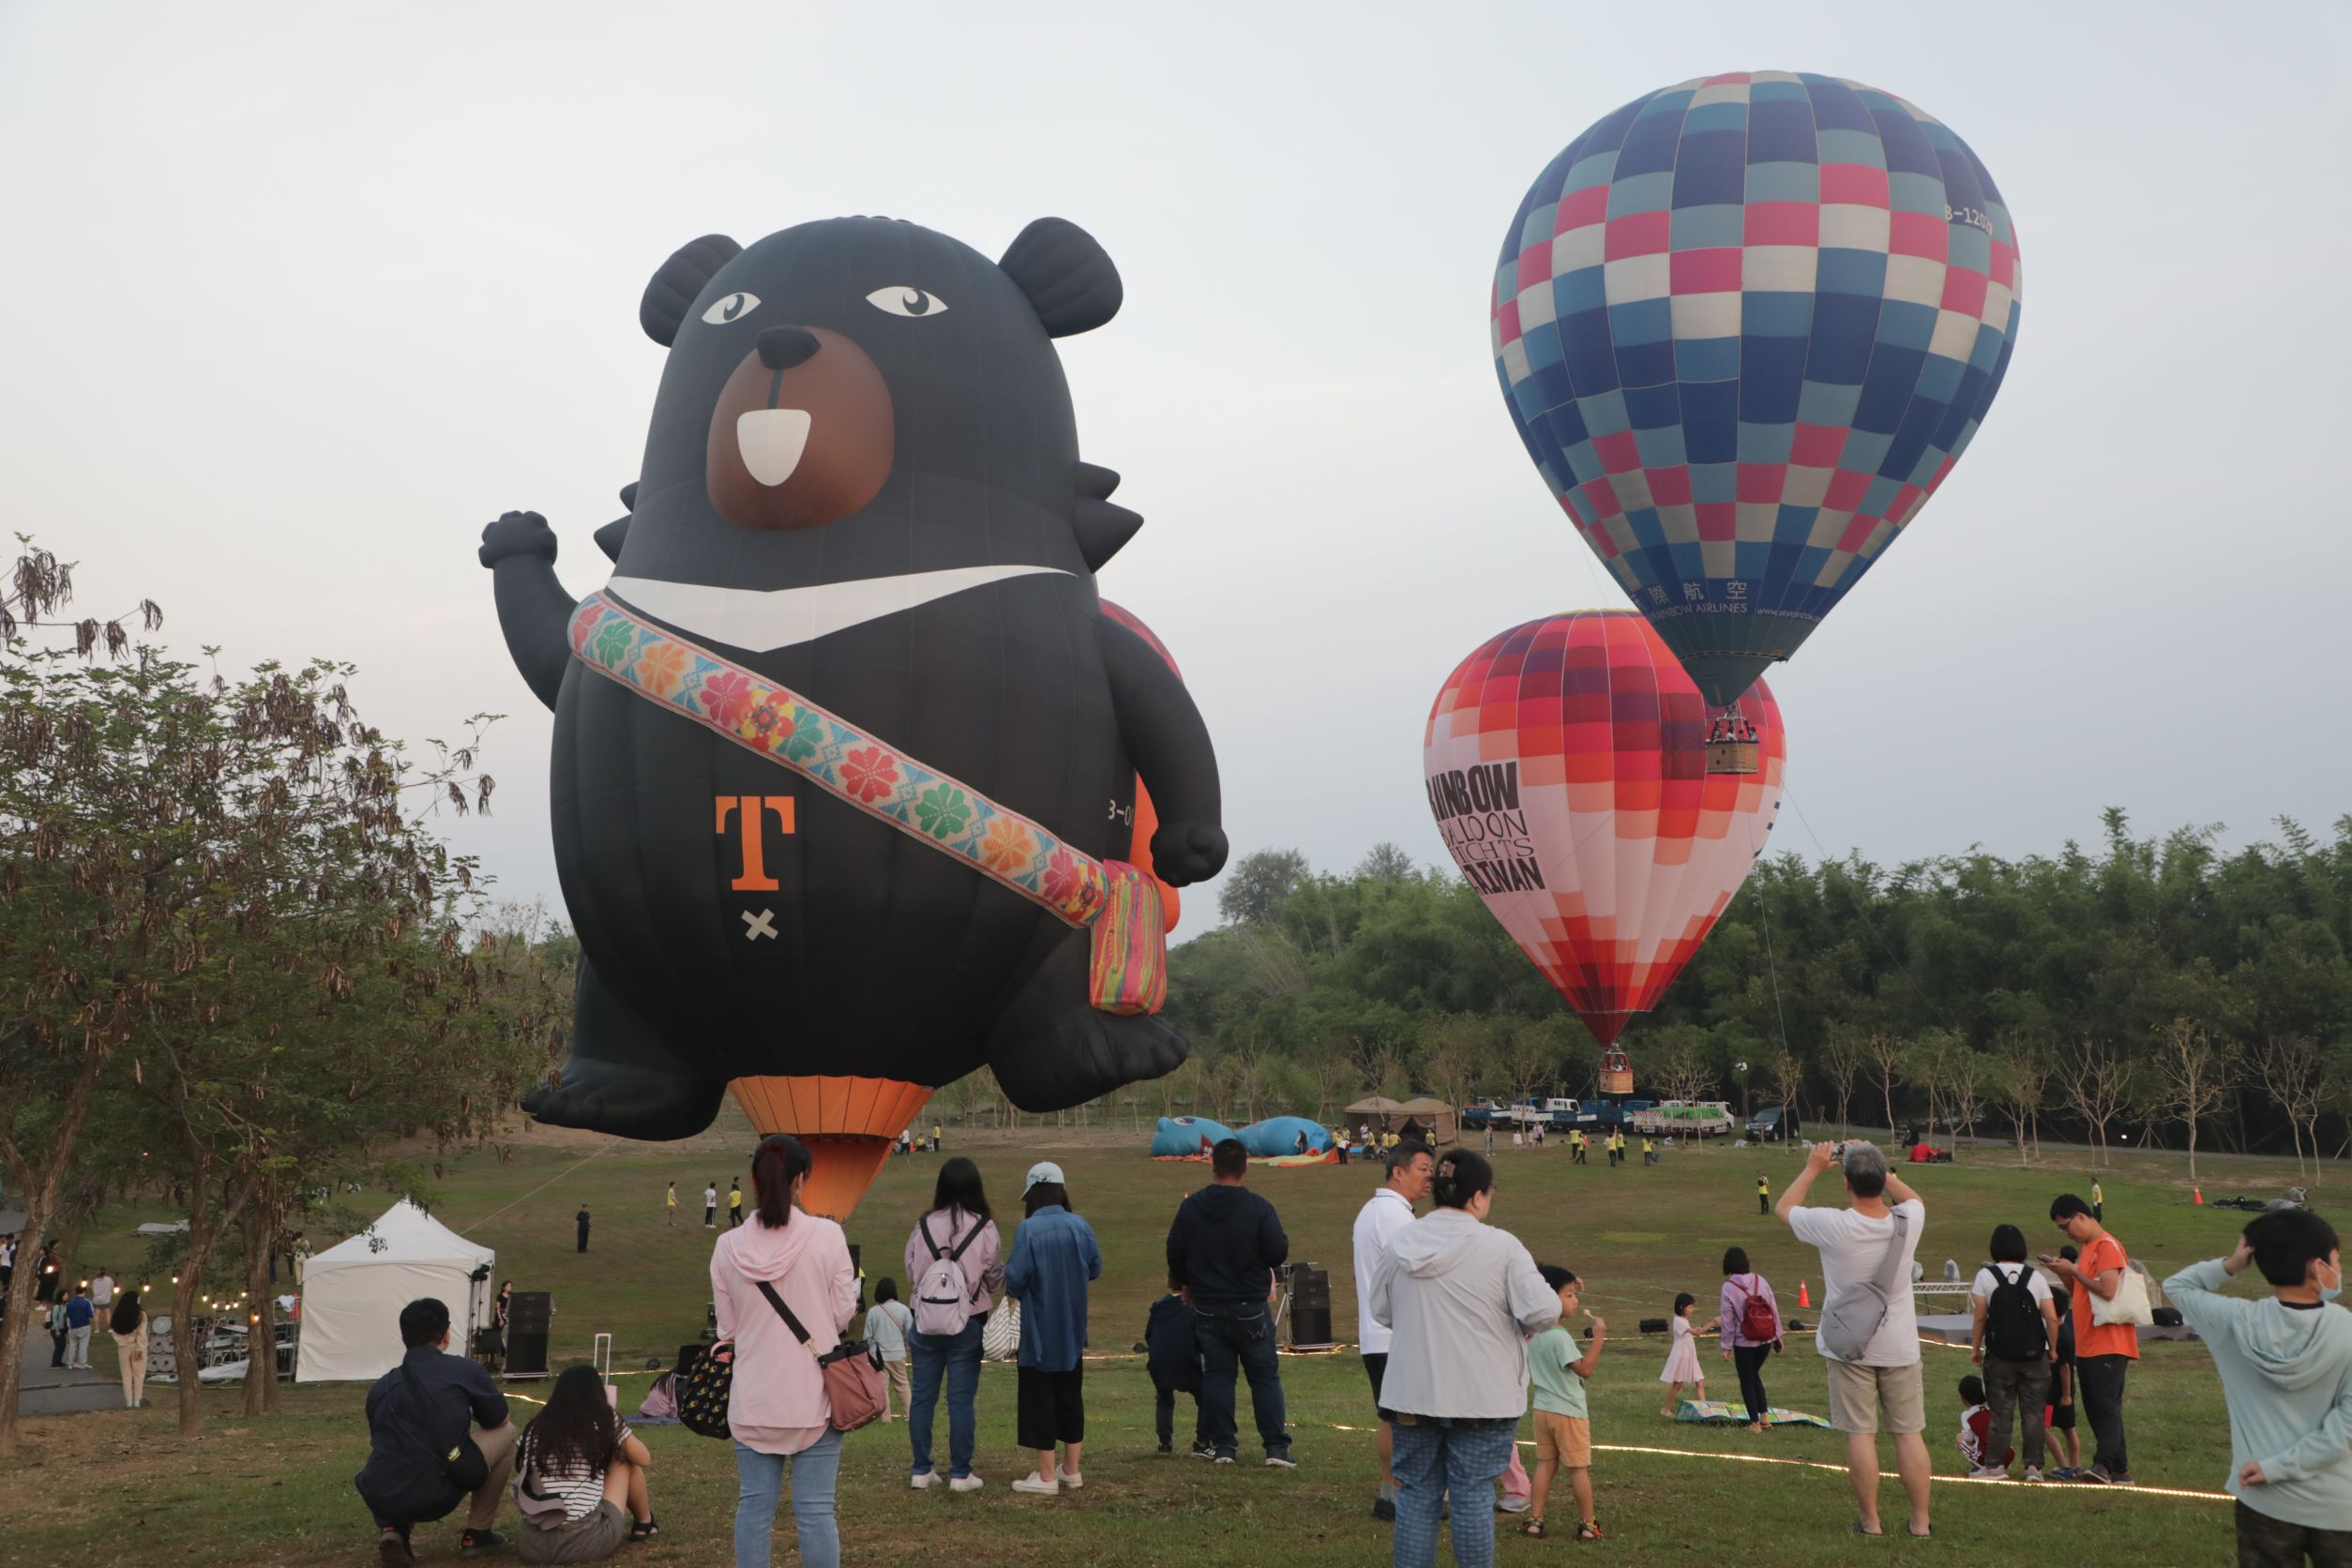 西拉雅森活节登场 黄伟哲一早体验热气球、欢迎大人小孩一起来森活